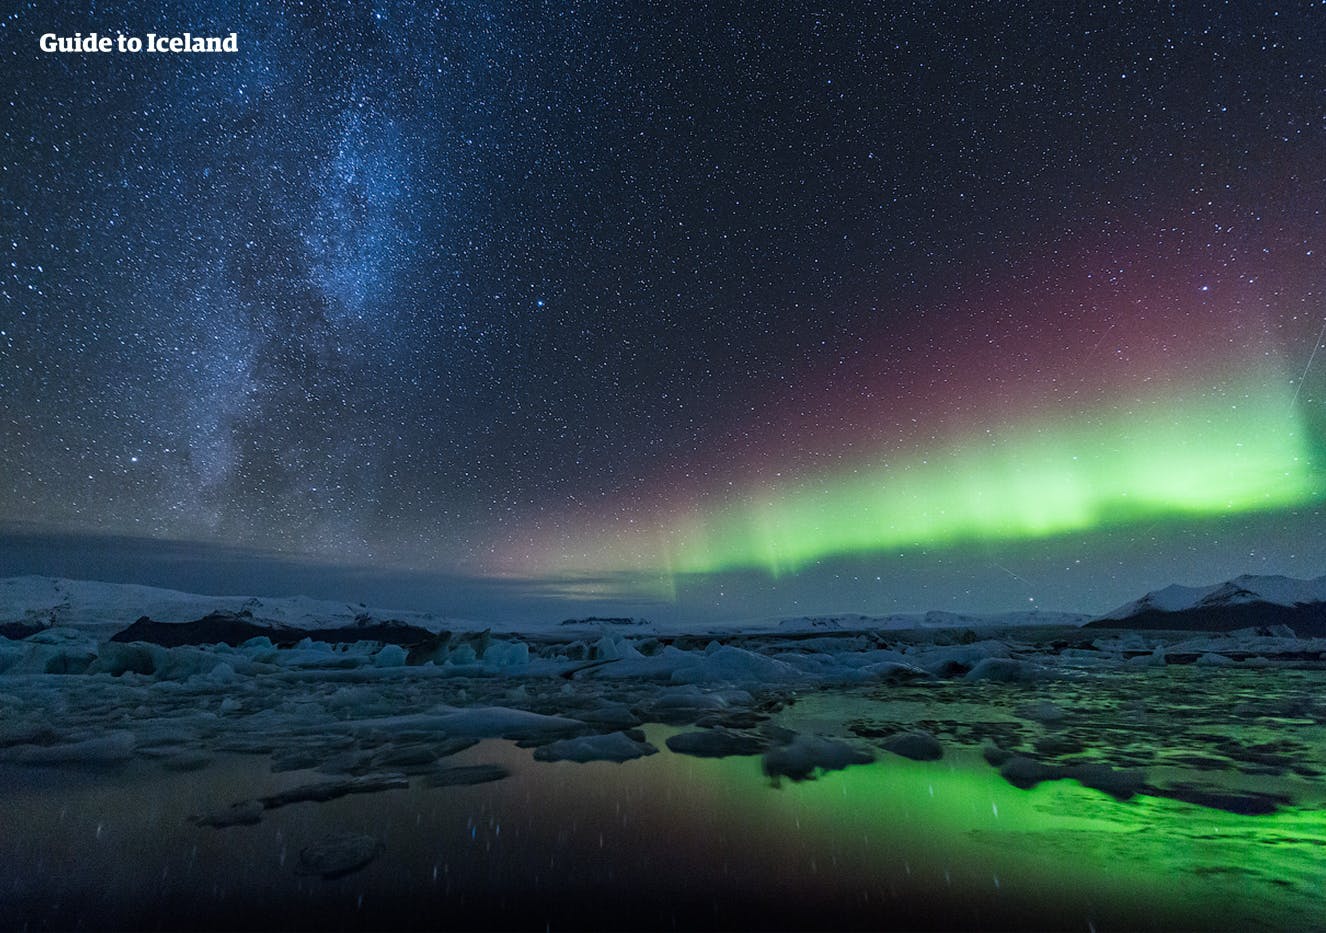 Los colores verde, rosa y morado de la aurora boreal mientras bailan sobre la laguna glaciar Jökulsárlón